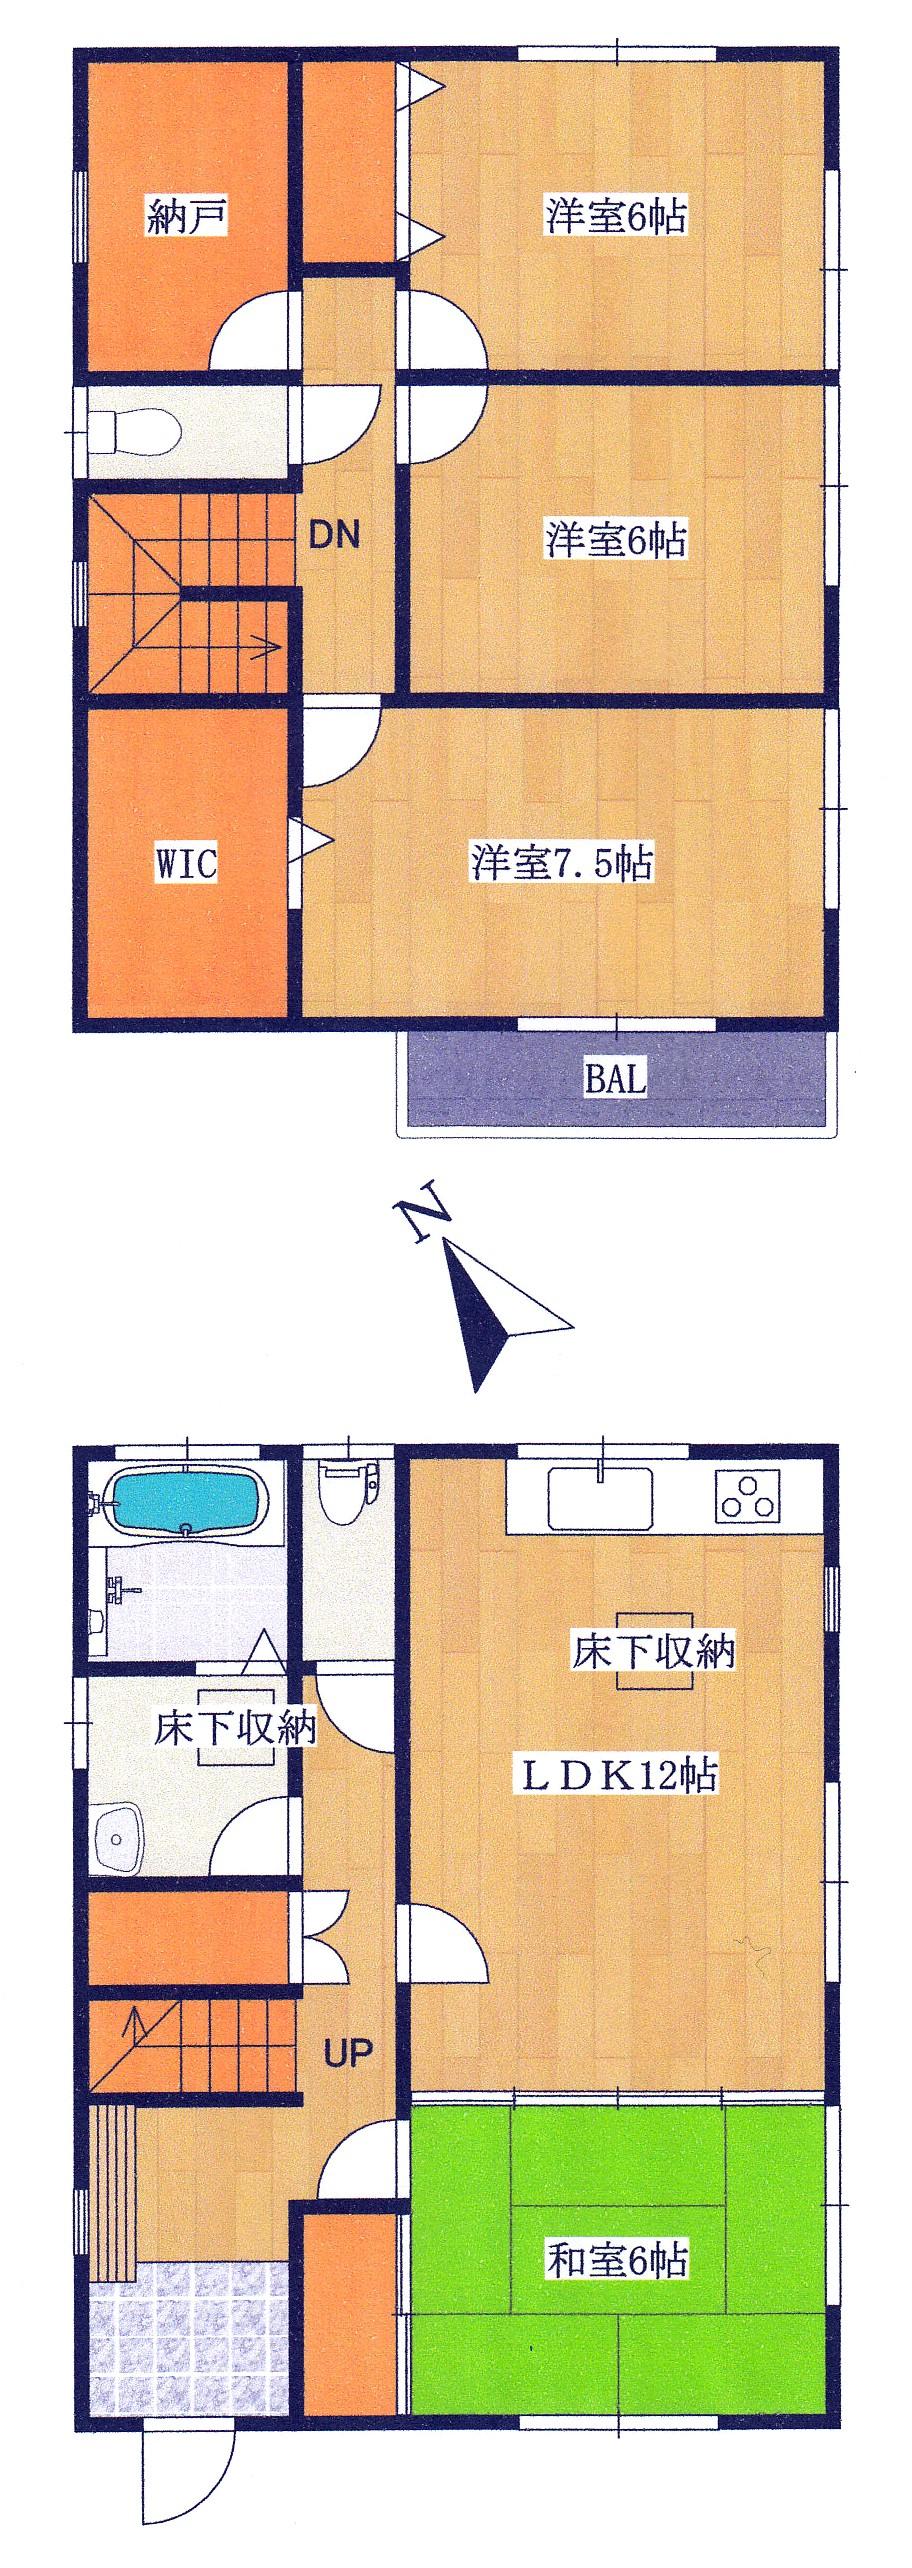 Floor plan. 22,800,000 yen, 4LDK + S (storeroom), Land area 134.01 sq m , Building area 104.34 sq m